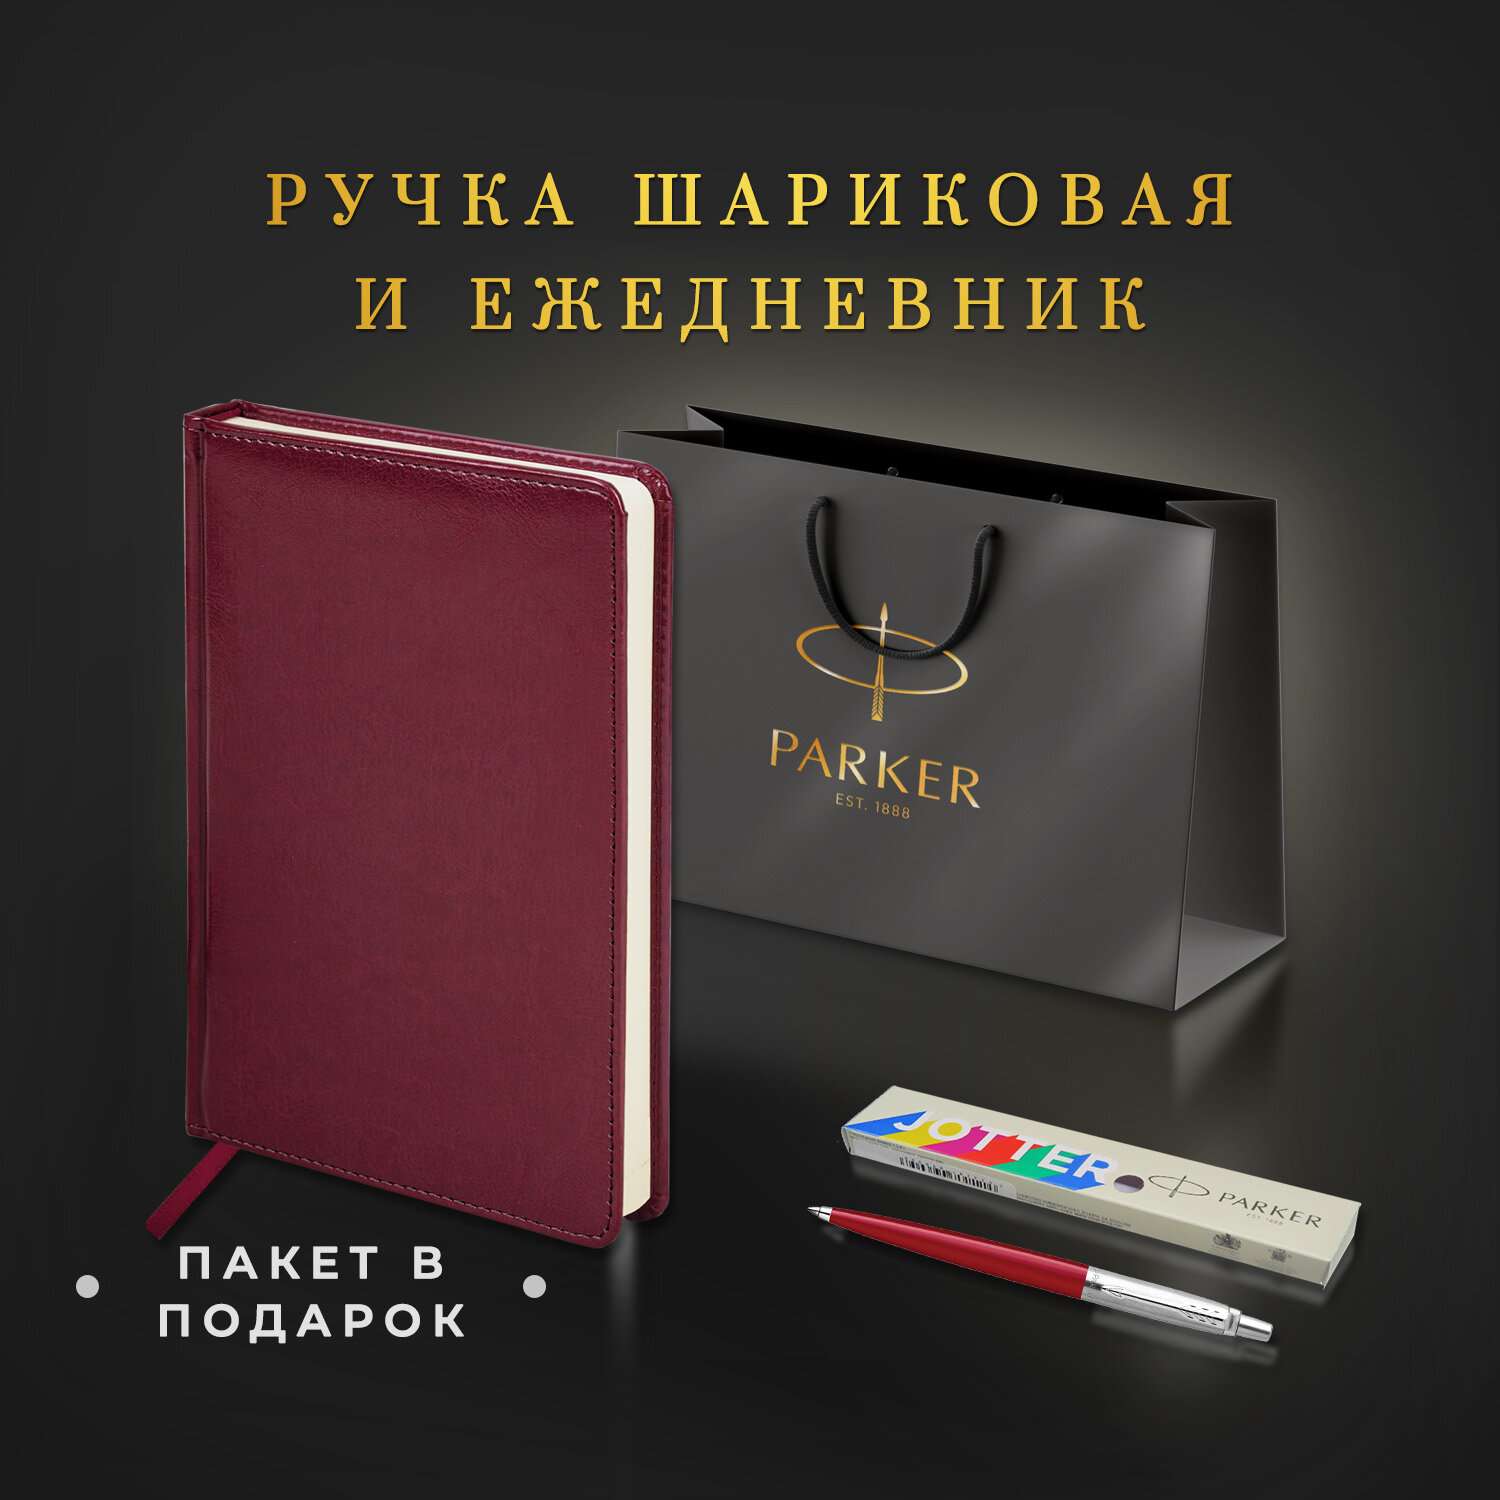 Подарочный набор PARKER ручка шариковая Parker и ежедневник А5 - фото 2